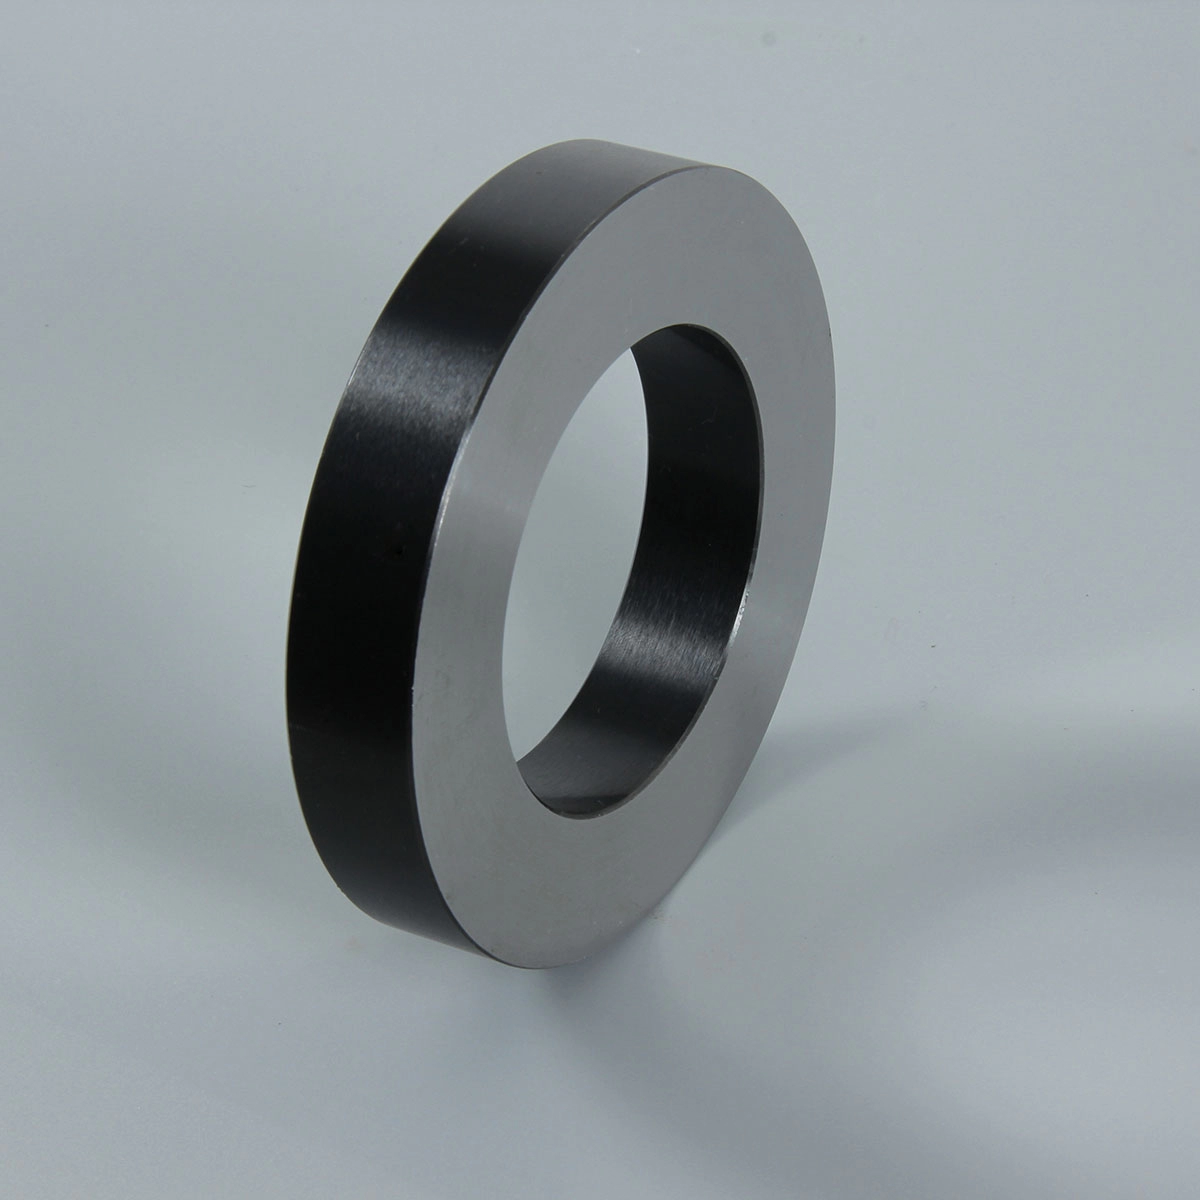 Steel slitter spacer separator disc for coil slitting line